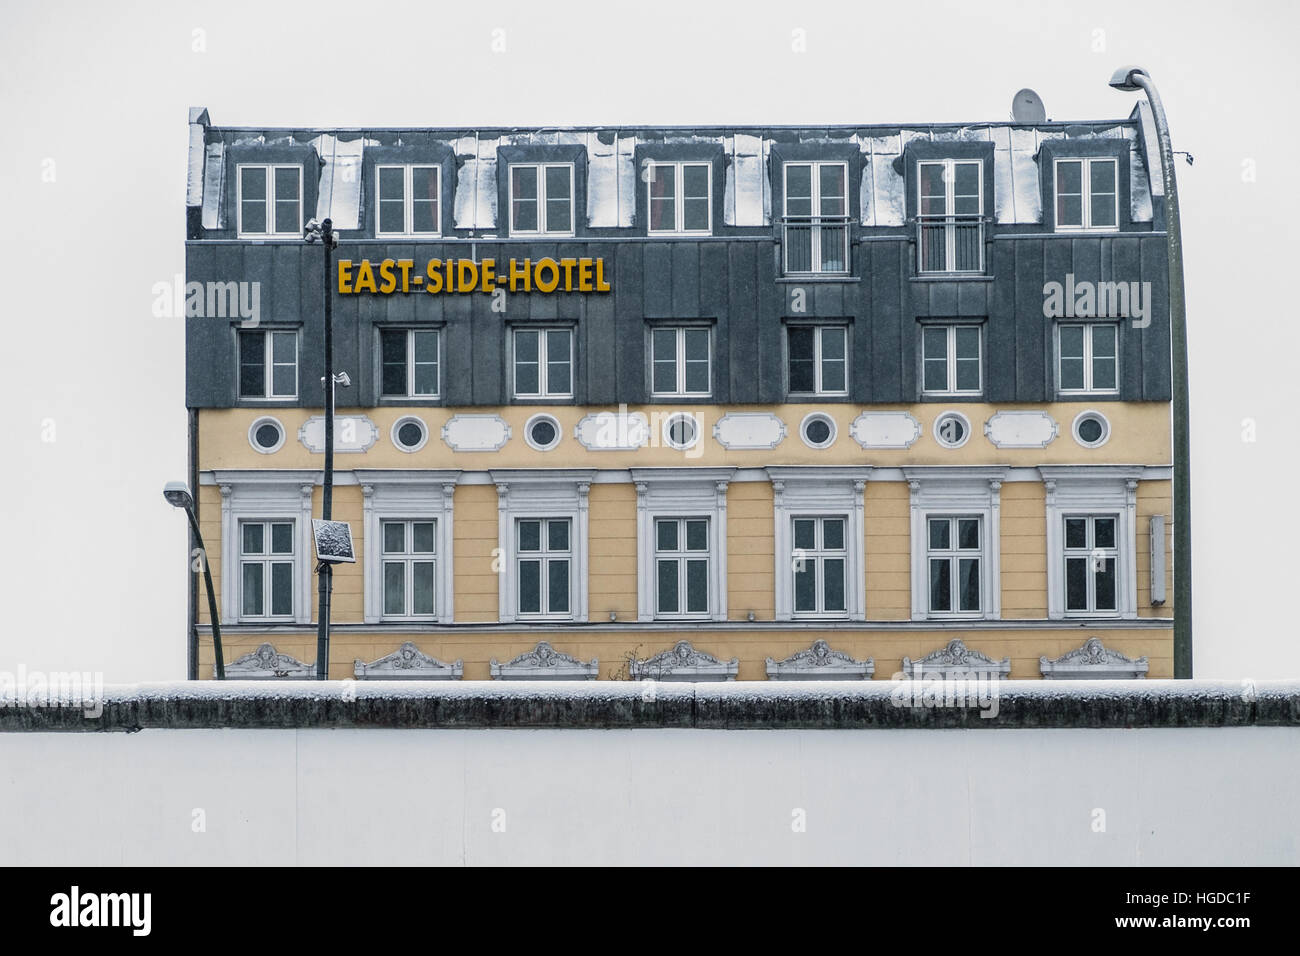 East Side Hotel befindet sich hinter der Berliner Mauer / East Side Gallery, der längste Abschnitt der Berliner Mauer. Stockfoto